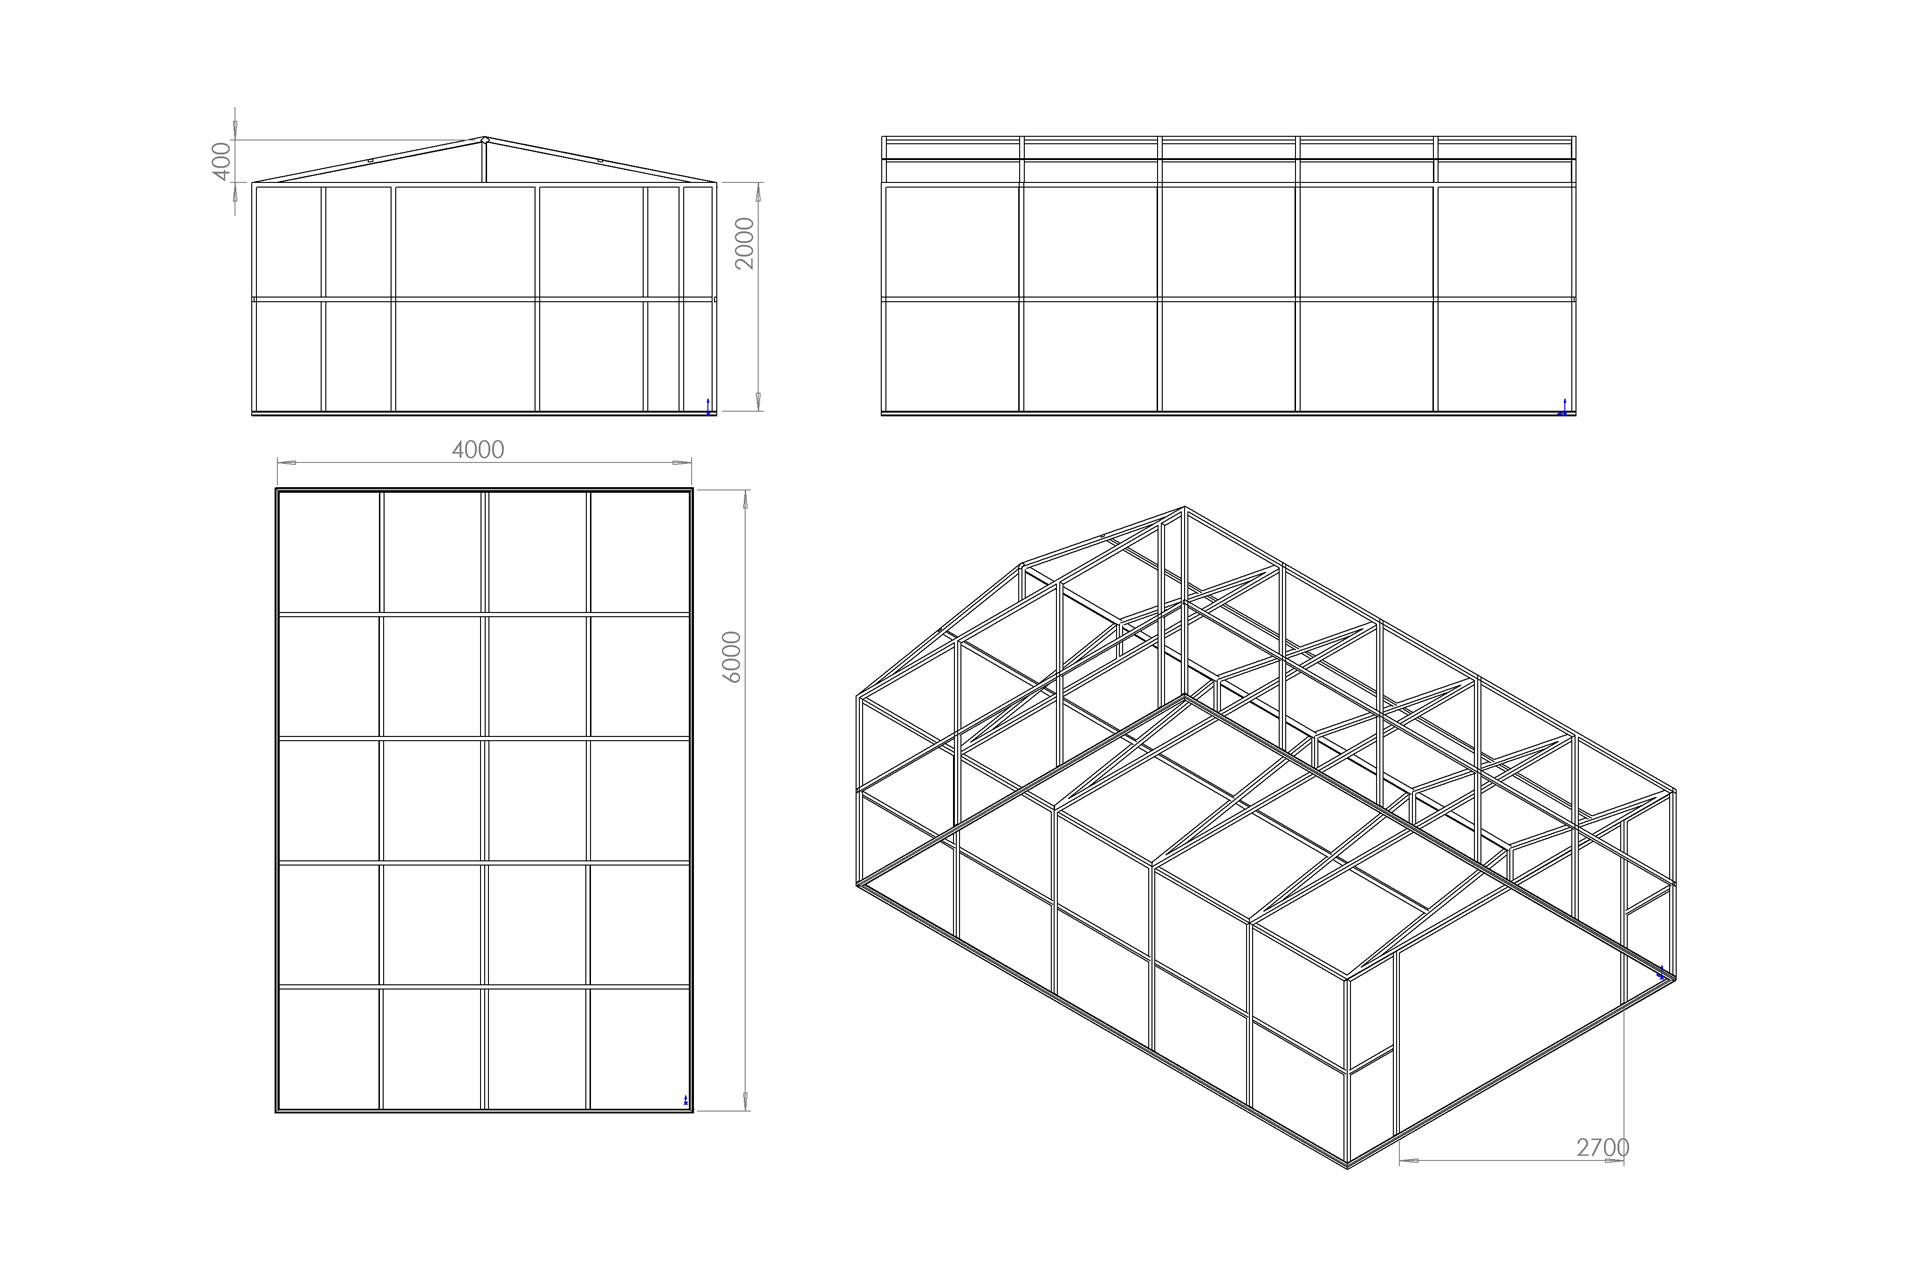 Как построить гараж пенал? Размеры и чертежи (14 шт.)